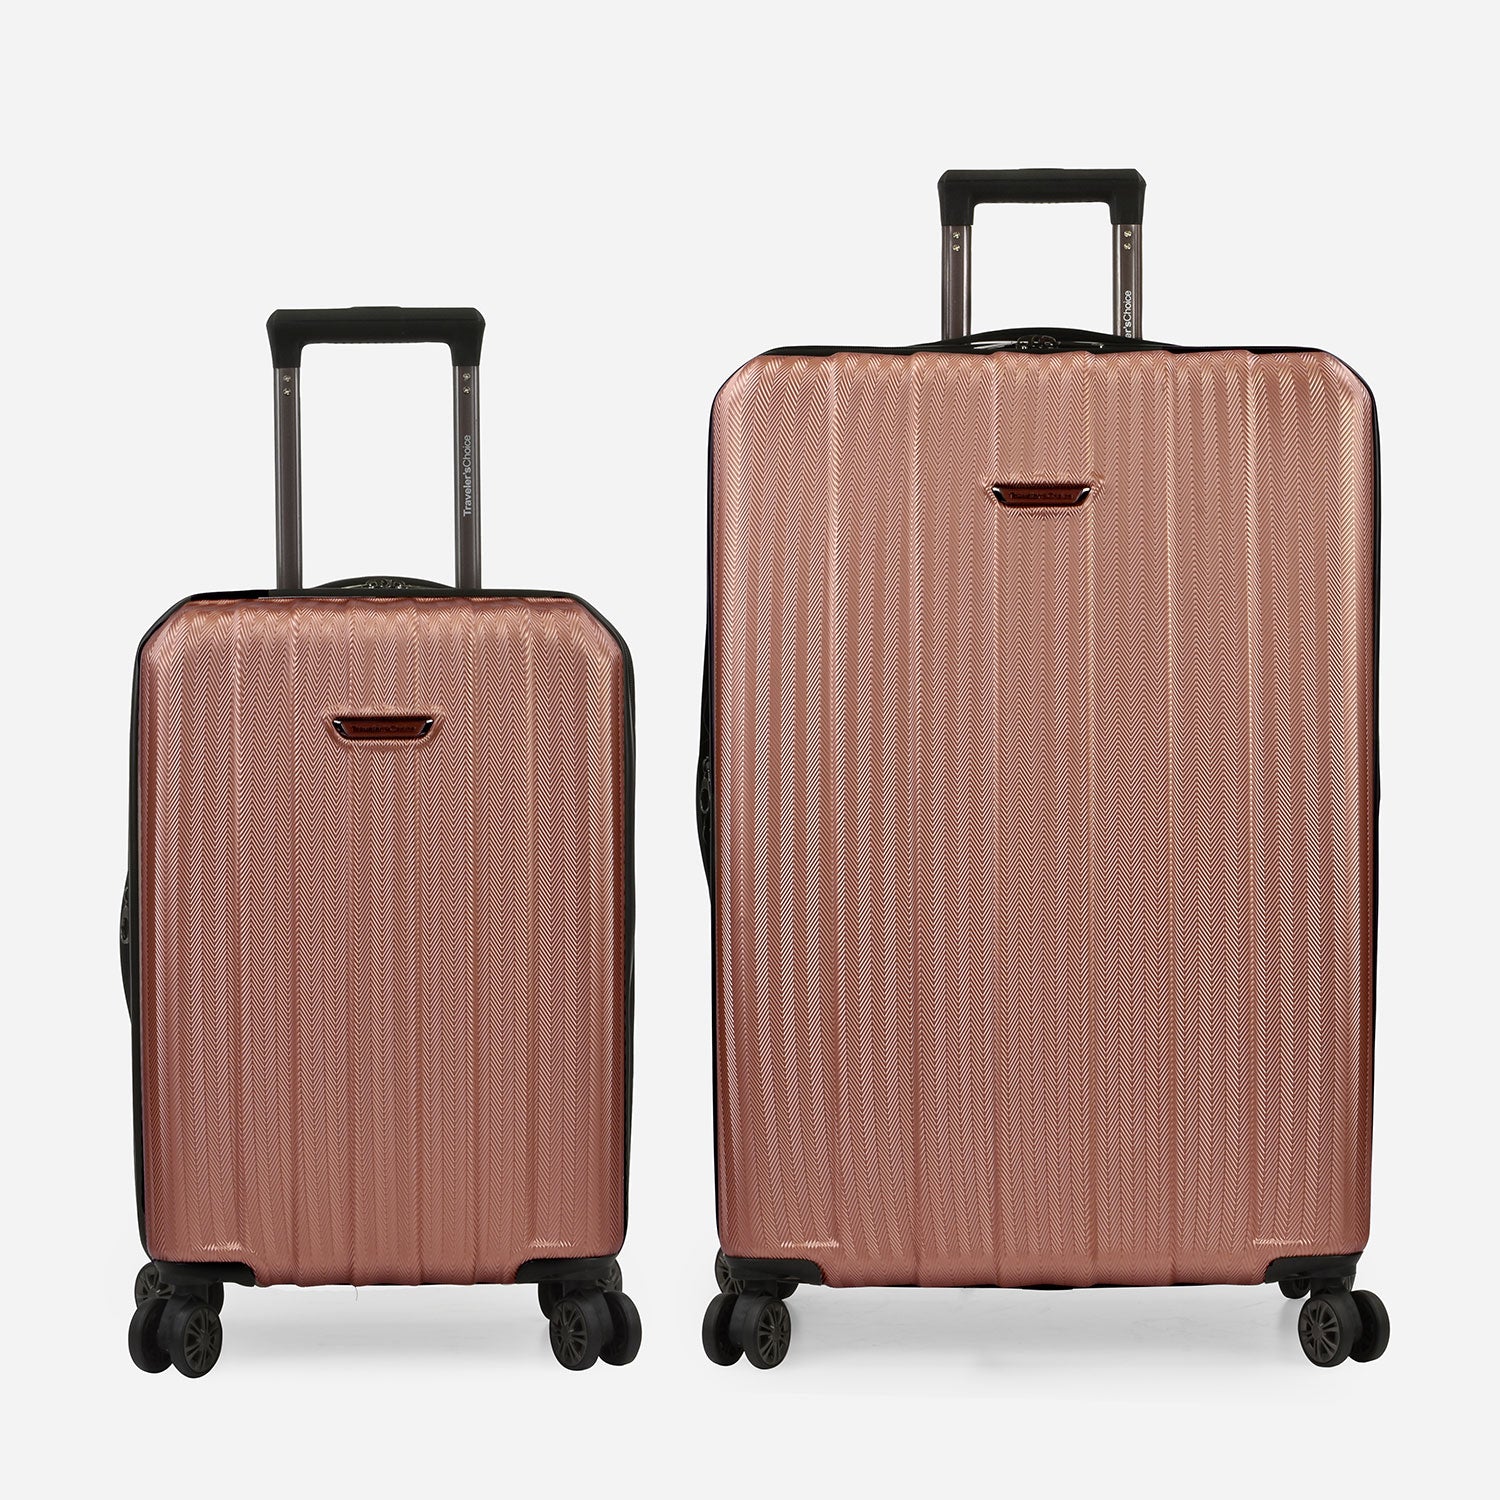 Traveler's Choice Dana Point Hardside Expandable 2-Piece Luggage Suitcase Set Rose Gold